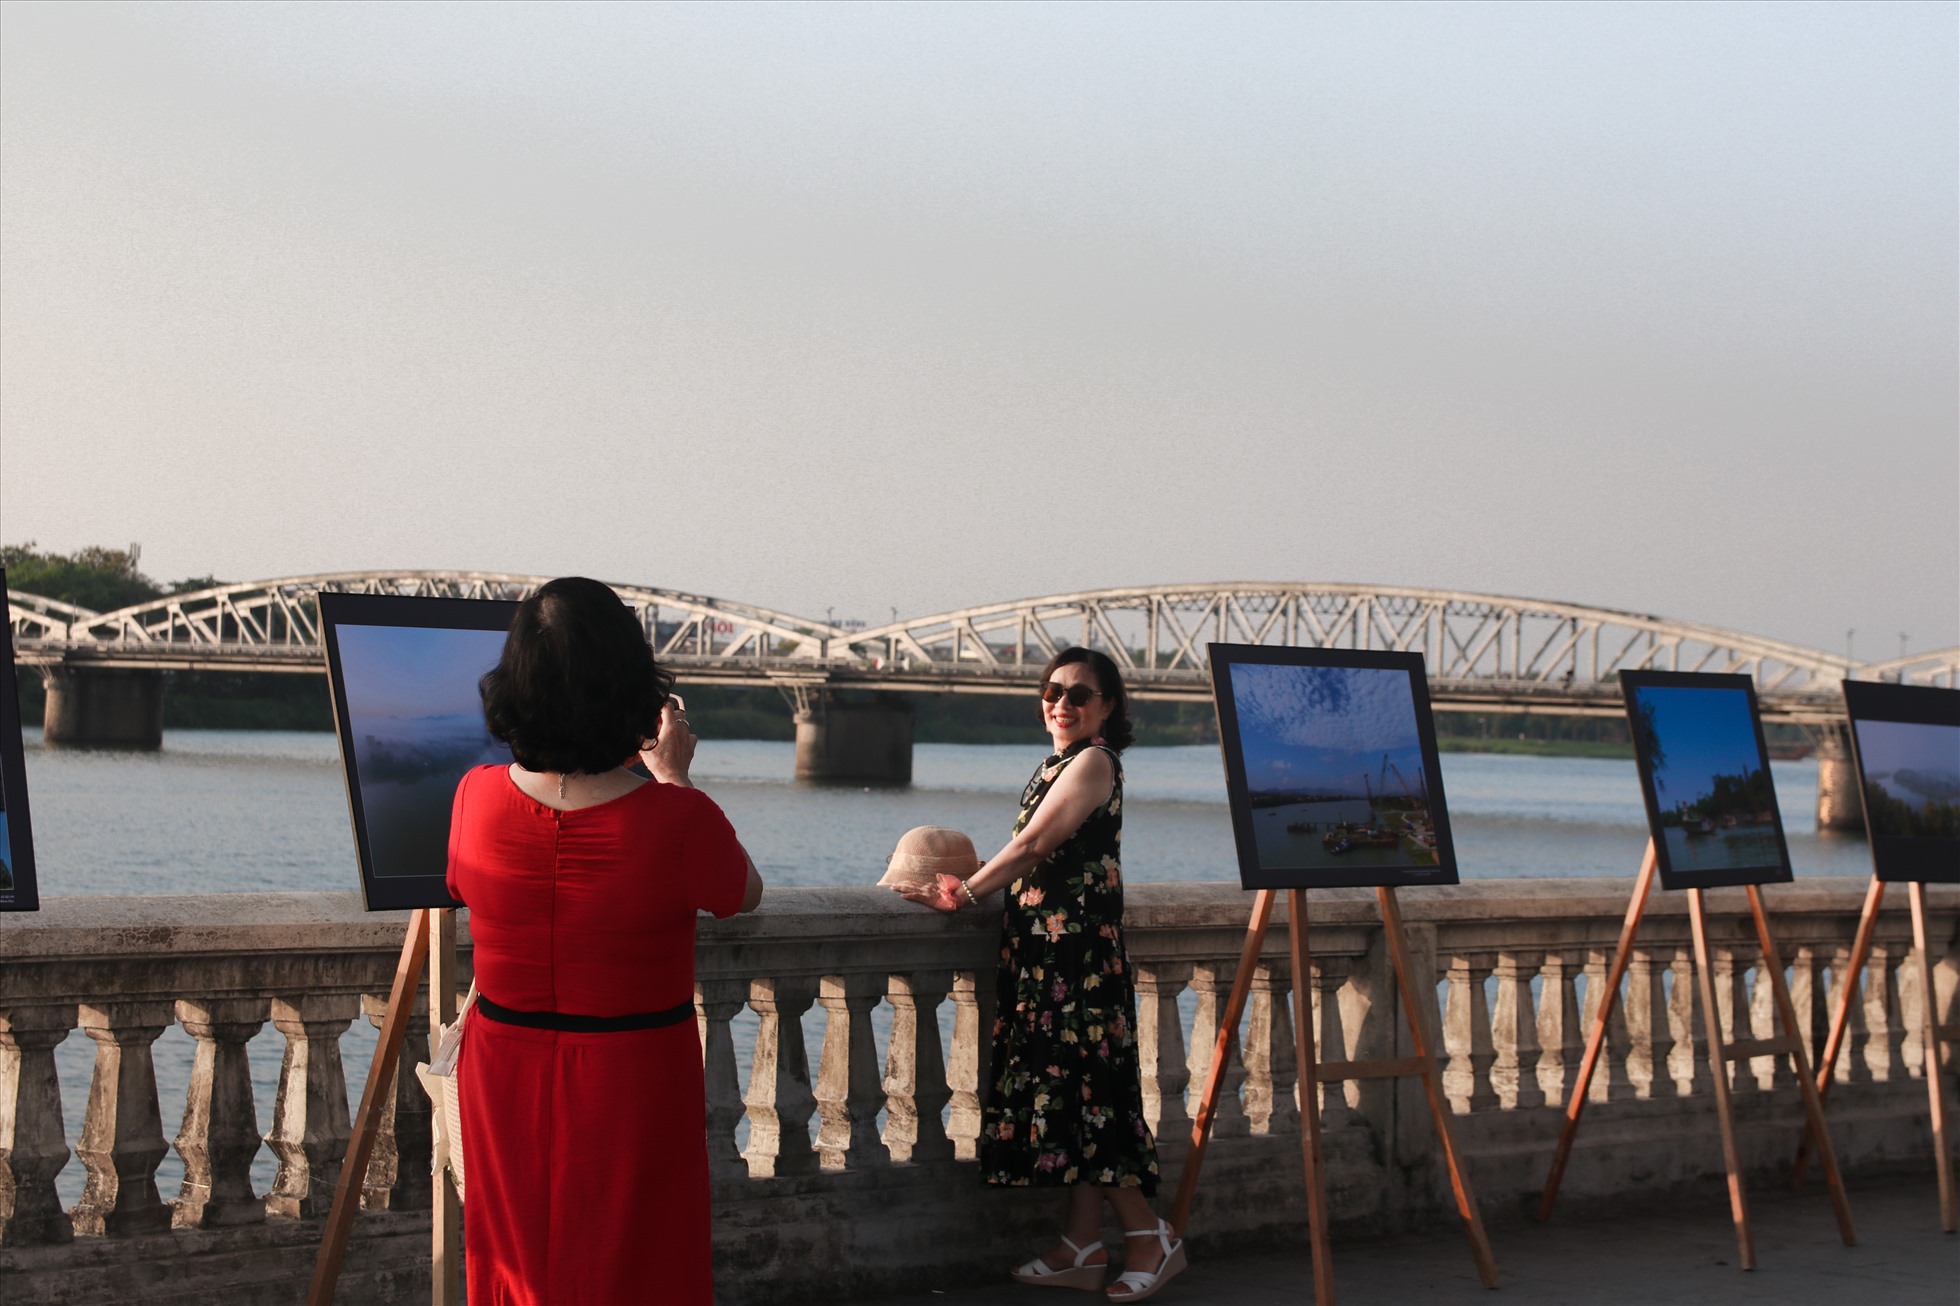 Ngoài ra, hàng chục bức ảnh nghệ thuật lưu giữ các hoạt động, các địa điểm nổi tiếng của Huế cũng rất nổi bật giữa không gian thơ mộng dọc sông Hương.